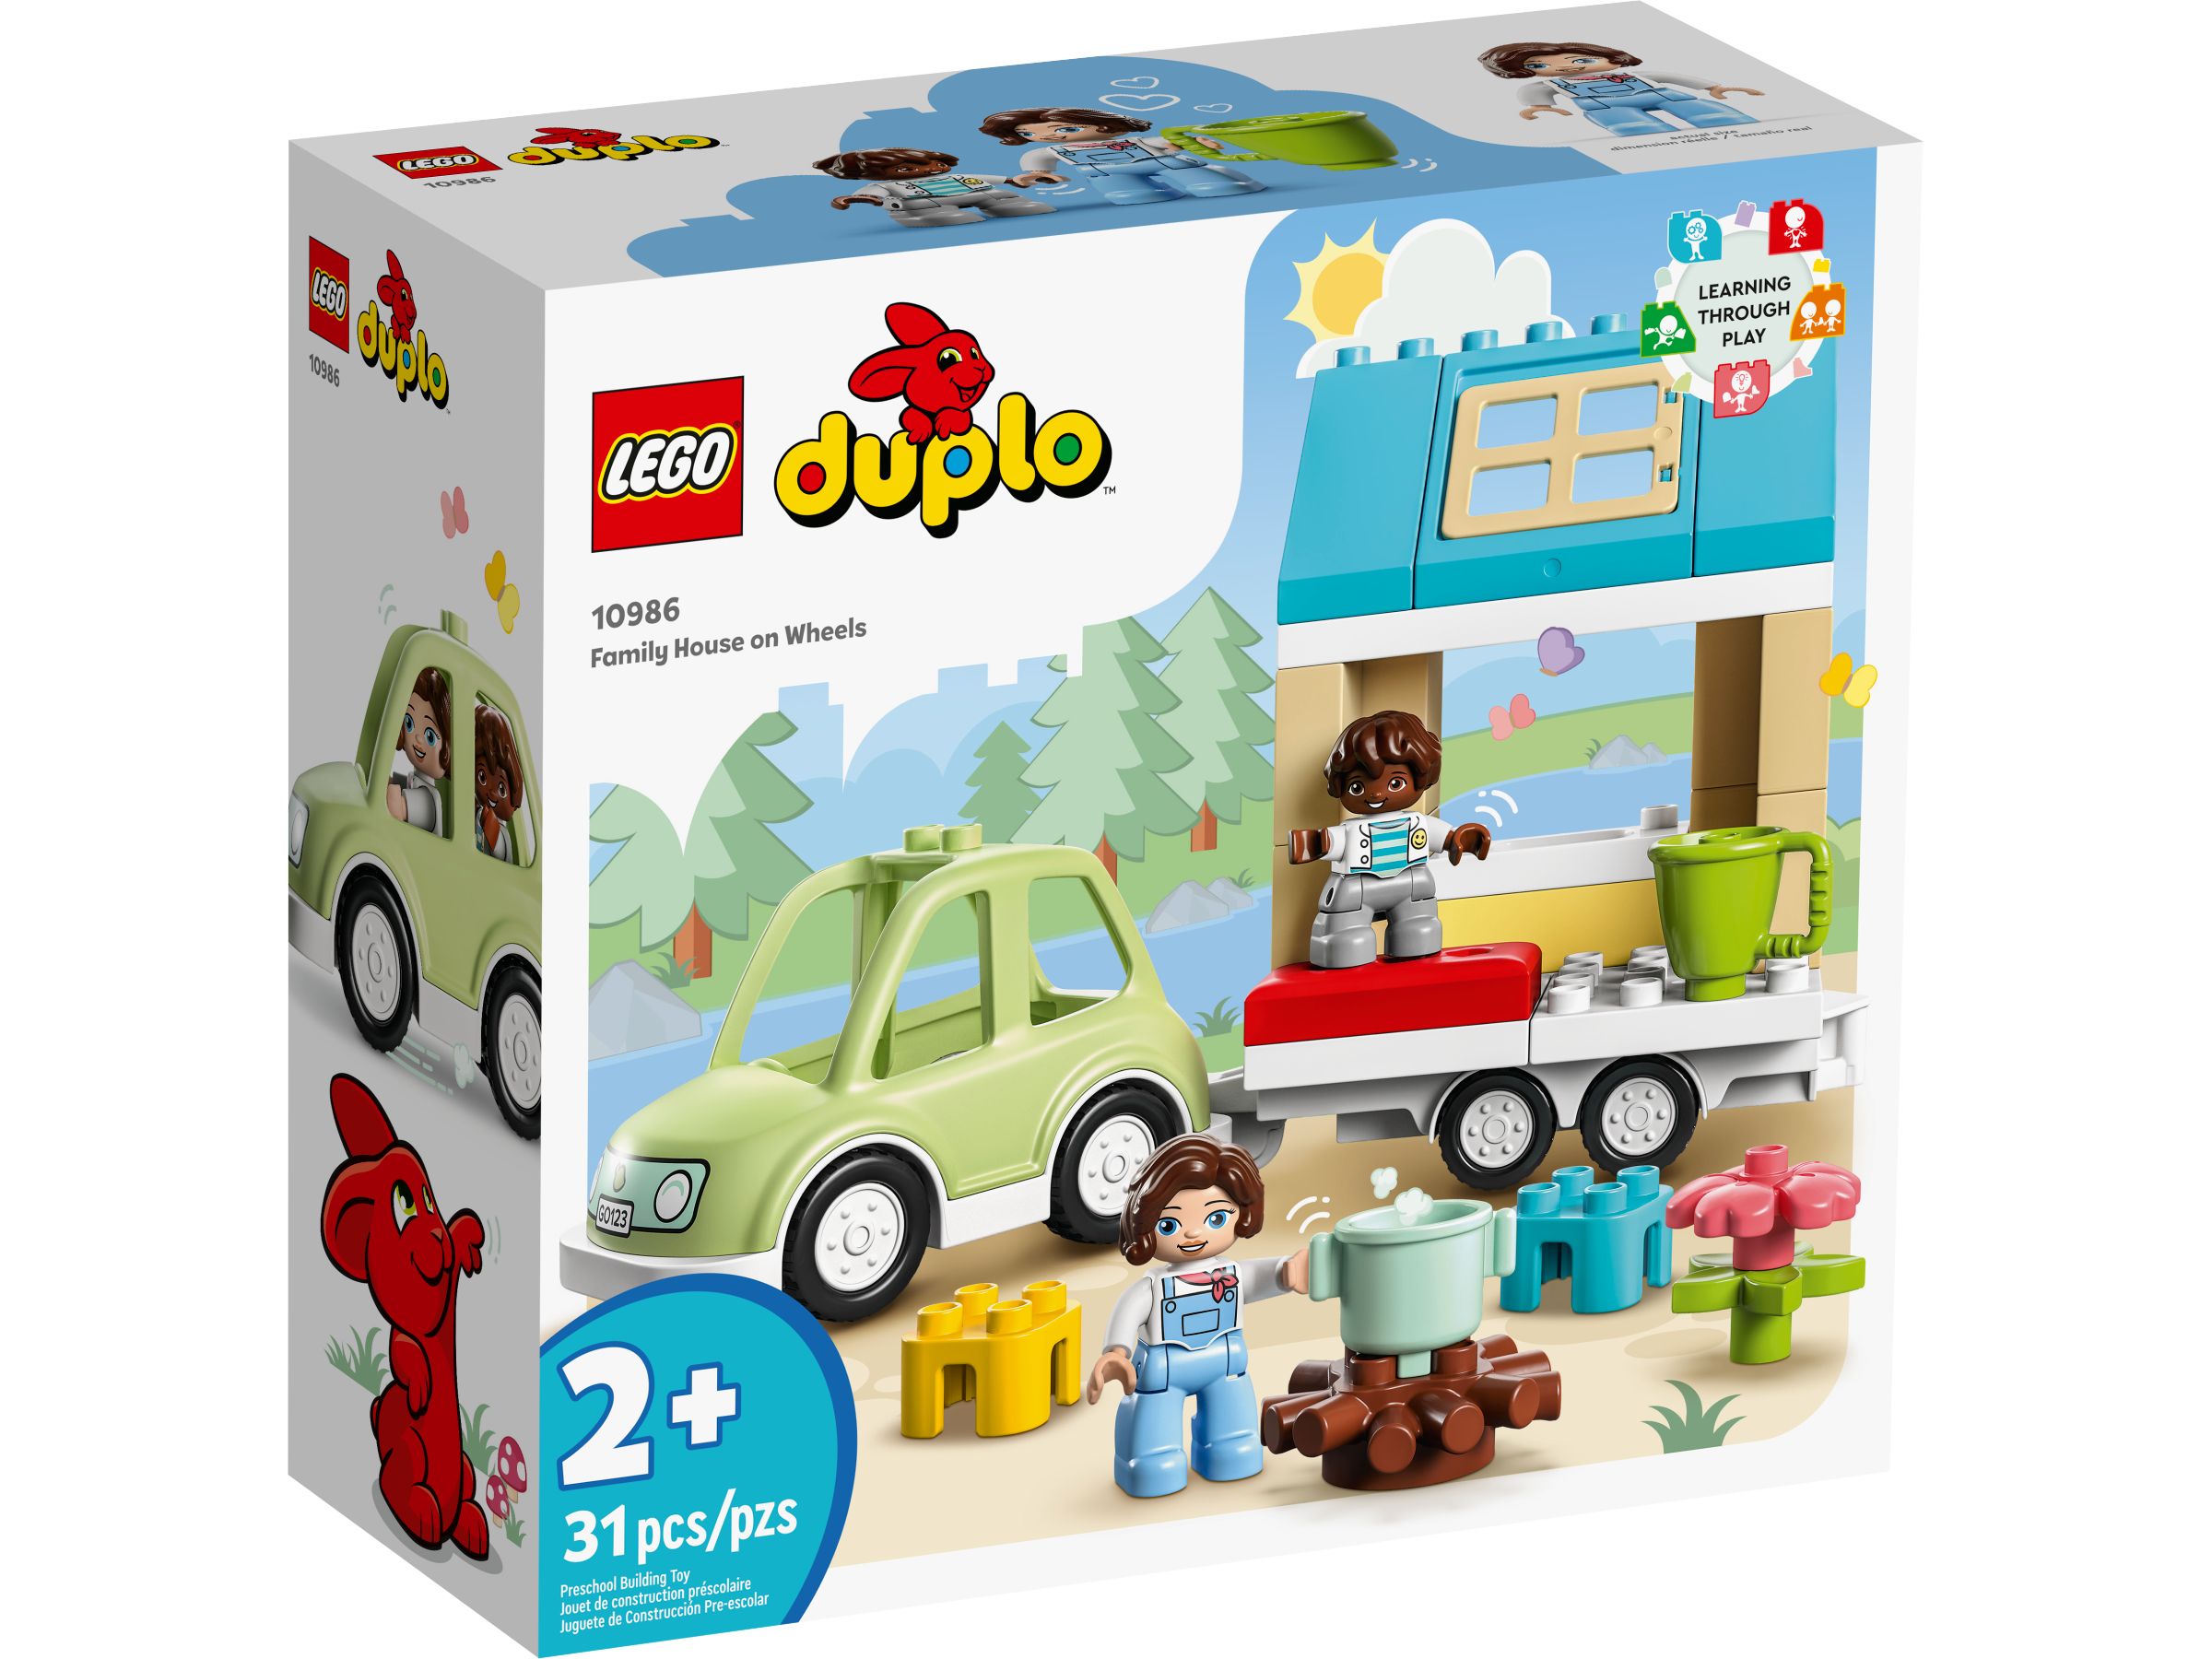 LEGO Duplo 10986 Zuhause auf Rädern LEGO_10986_alt1.jpg